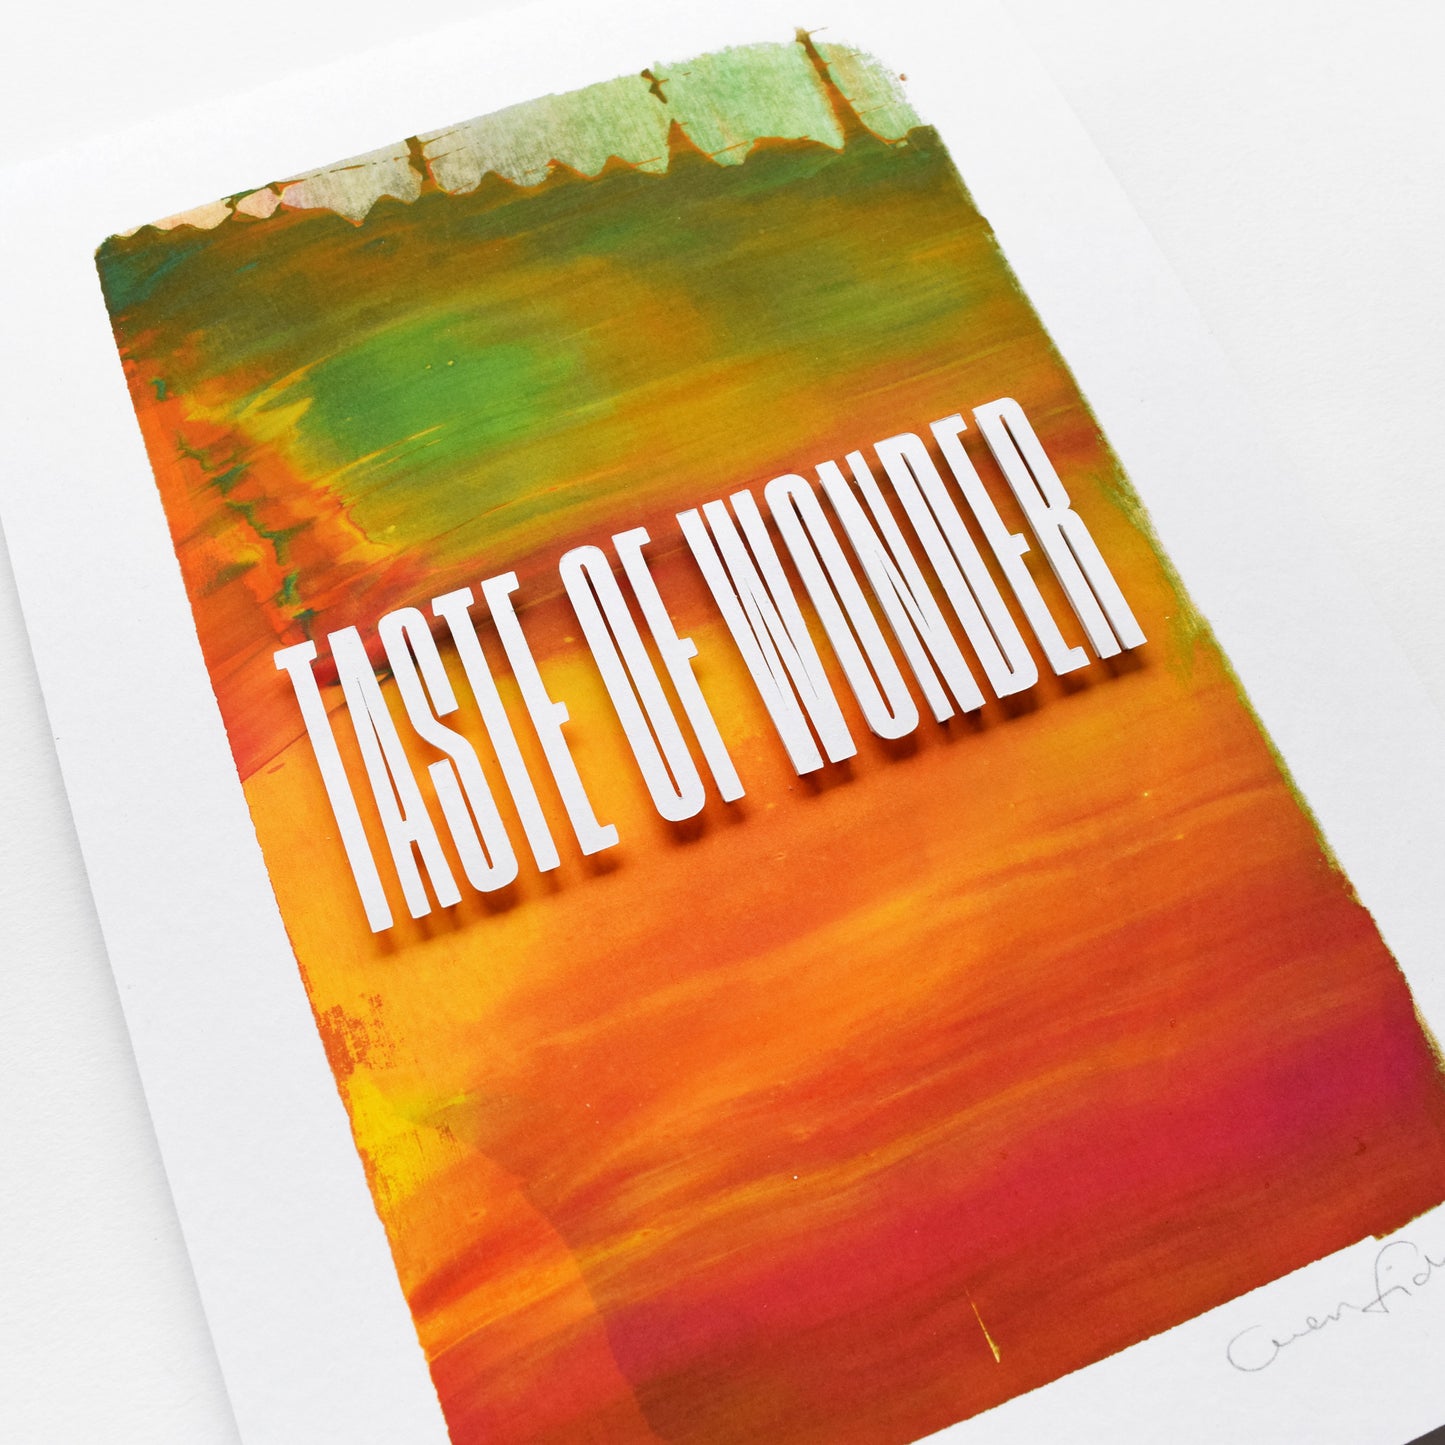 Like No Other — 'Taste Of Wonder' Framed Original Artwork